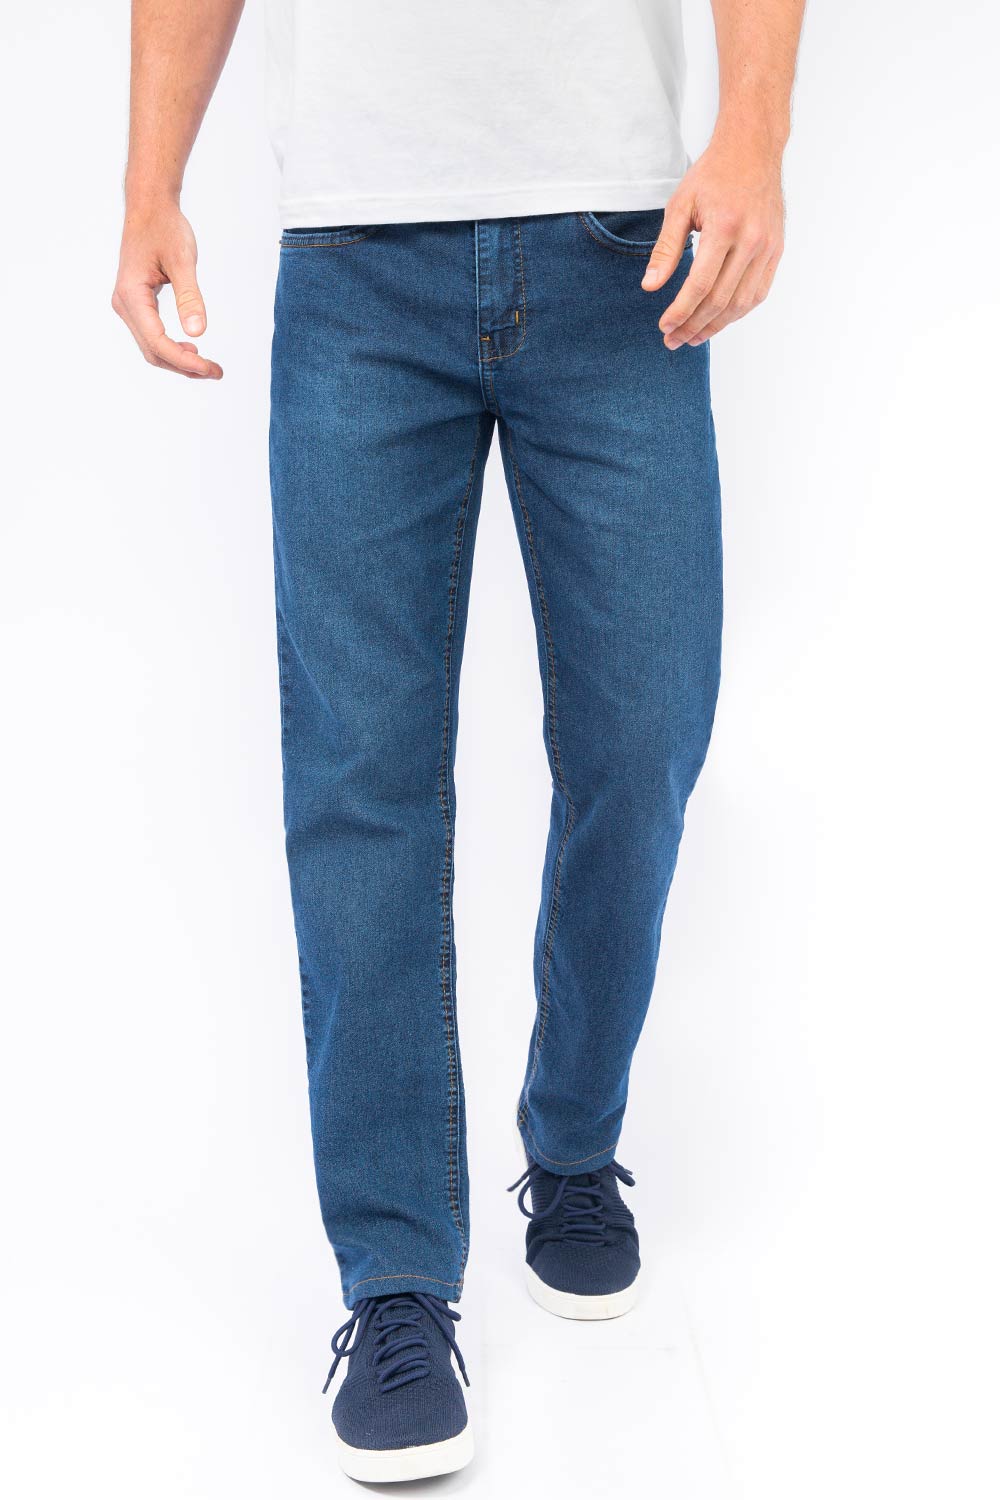 All Jeans Masculino: Short, Calça e Camisa